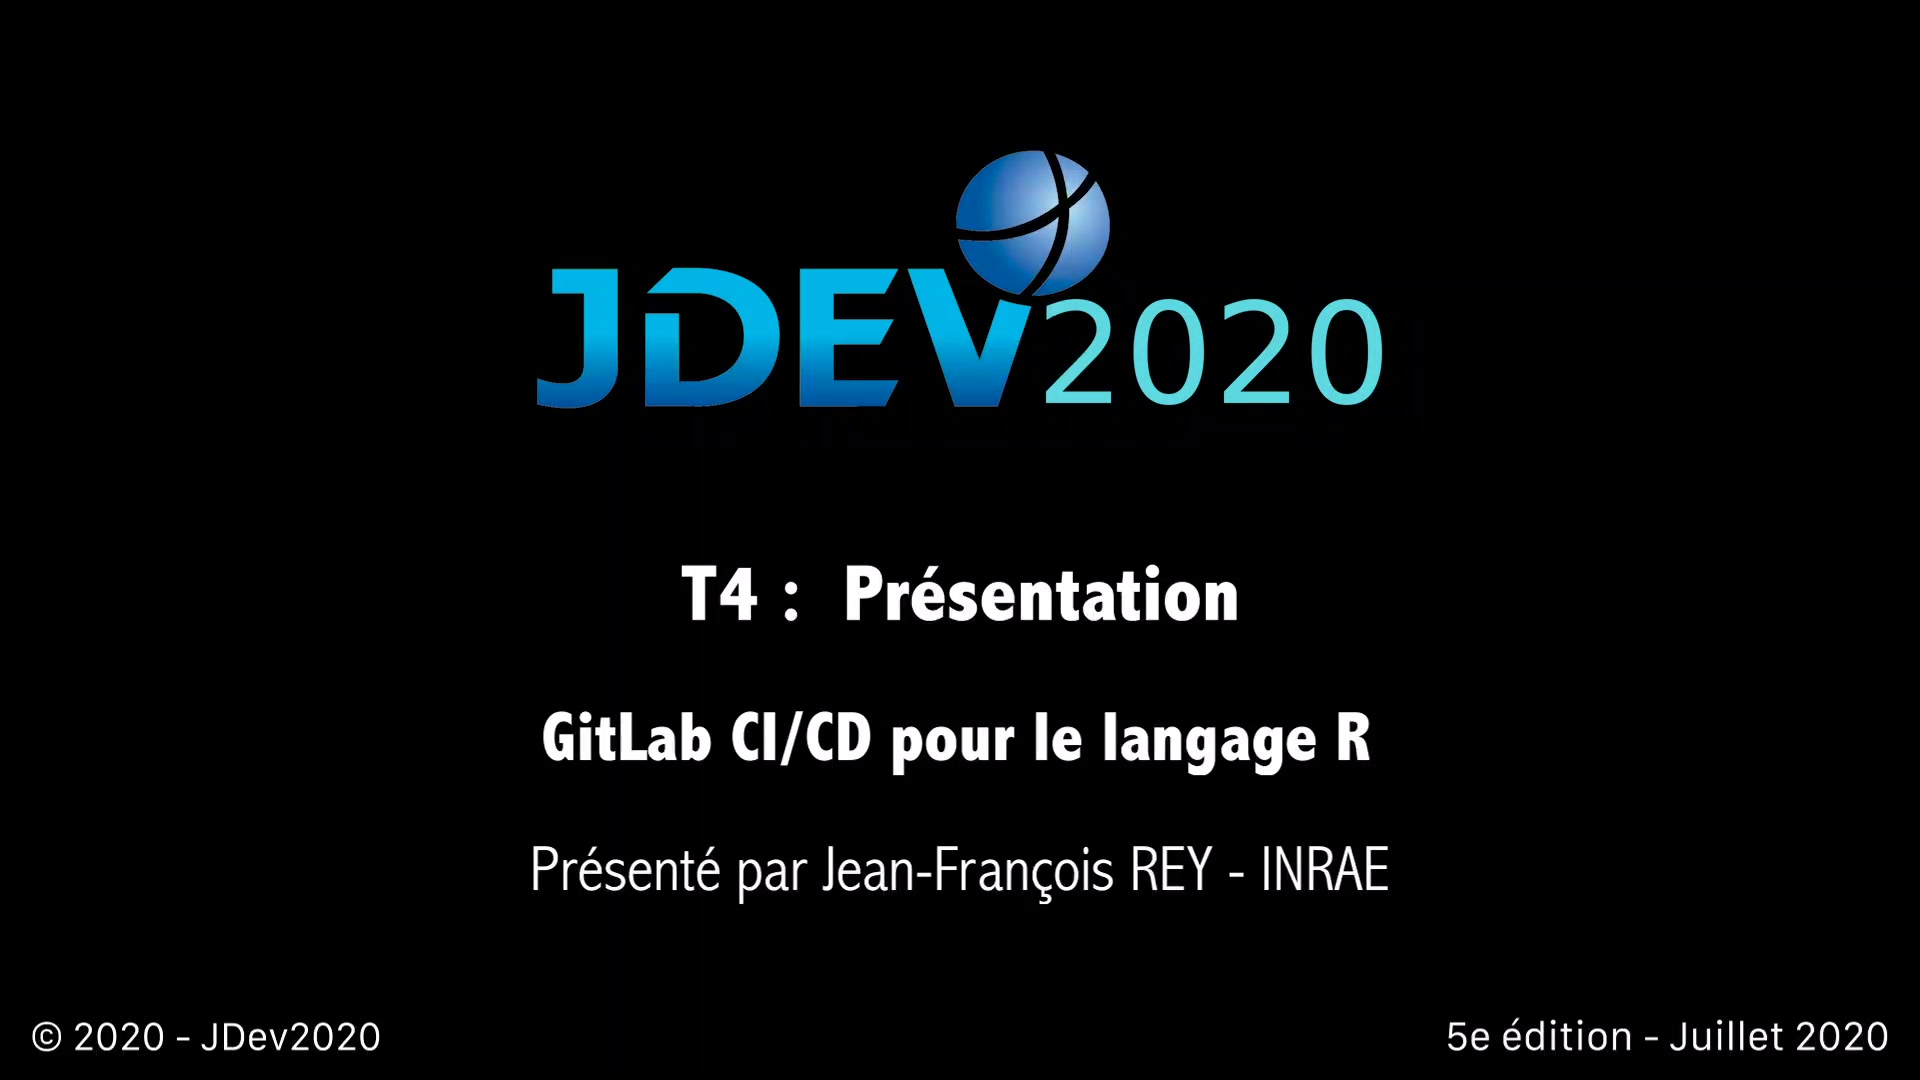 JDev2020 : T4 : GitLab CI/CD pour le langage R